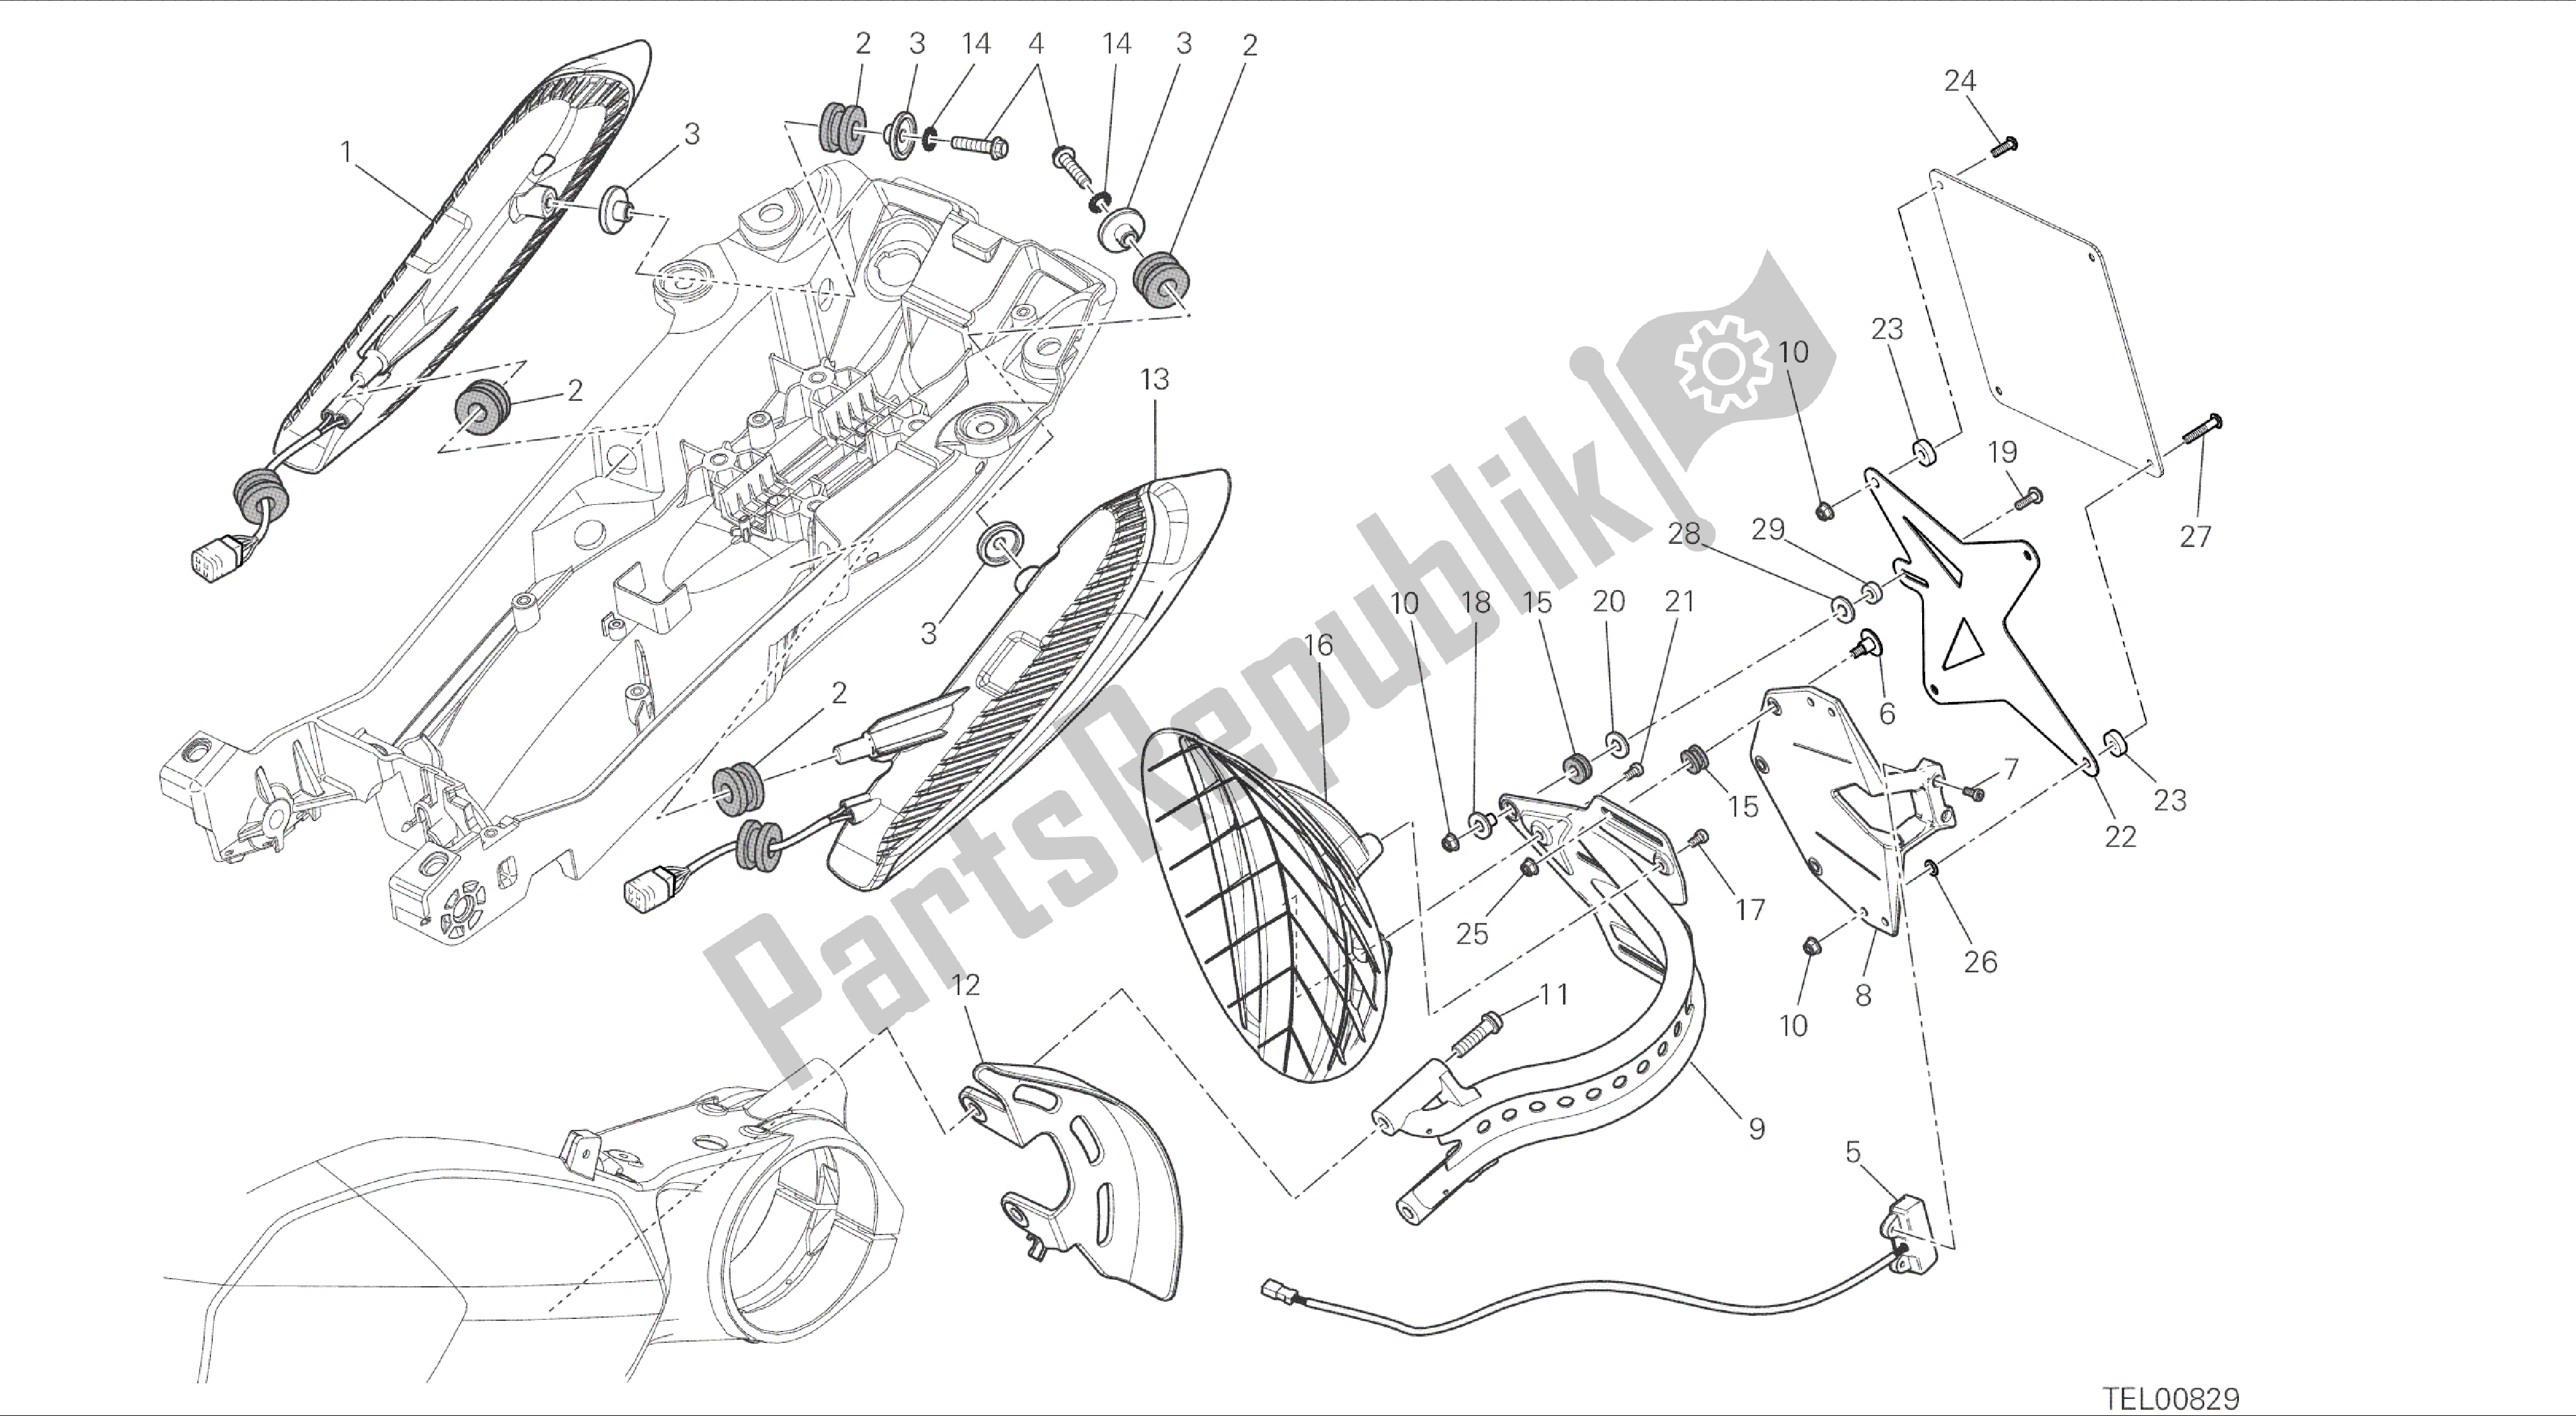 Alle onderdelen voor de Tekening 27a - Kentekenplaathouder - Achterlicht [mod: Dvlc; Xst: Eur, Fra, Jap] Groep Elektrisch van de Ducati Diavel Carbon 1200 2016